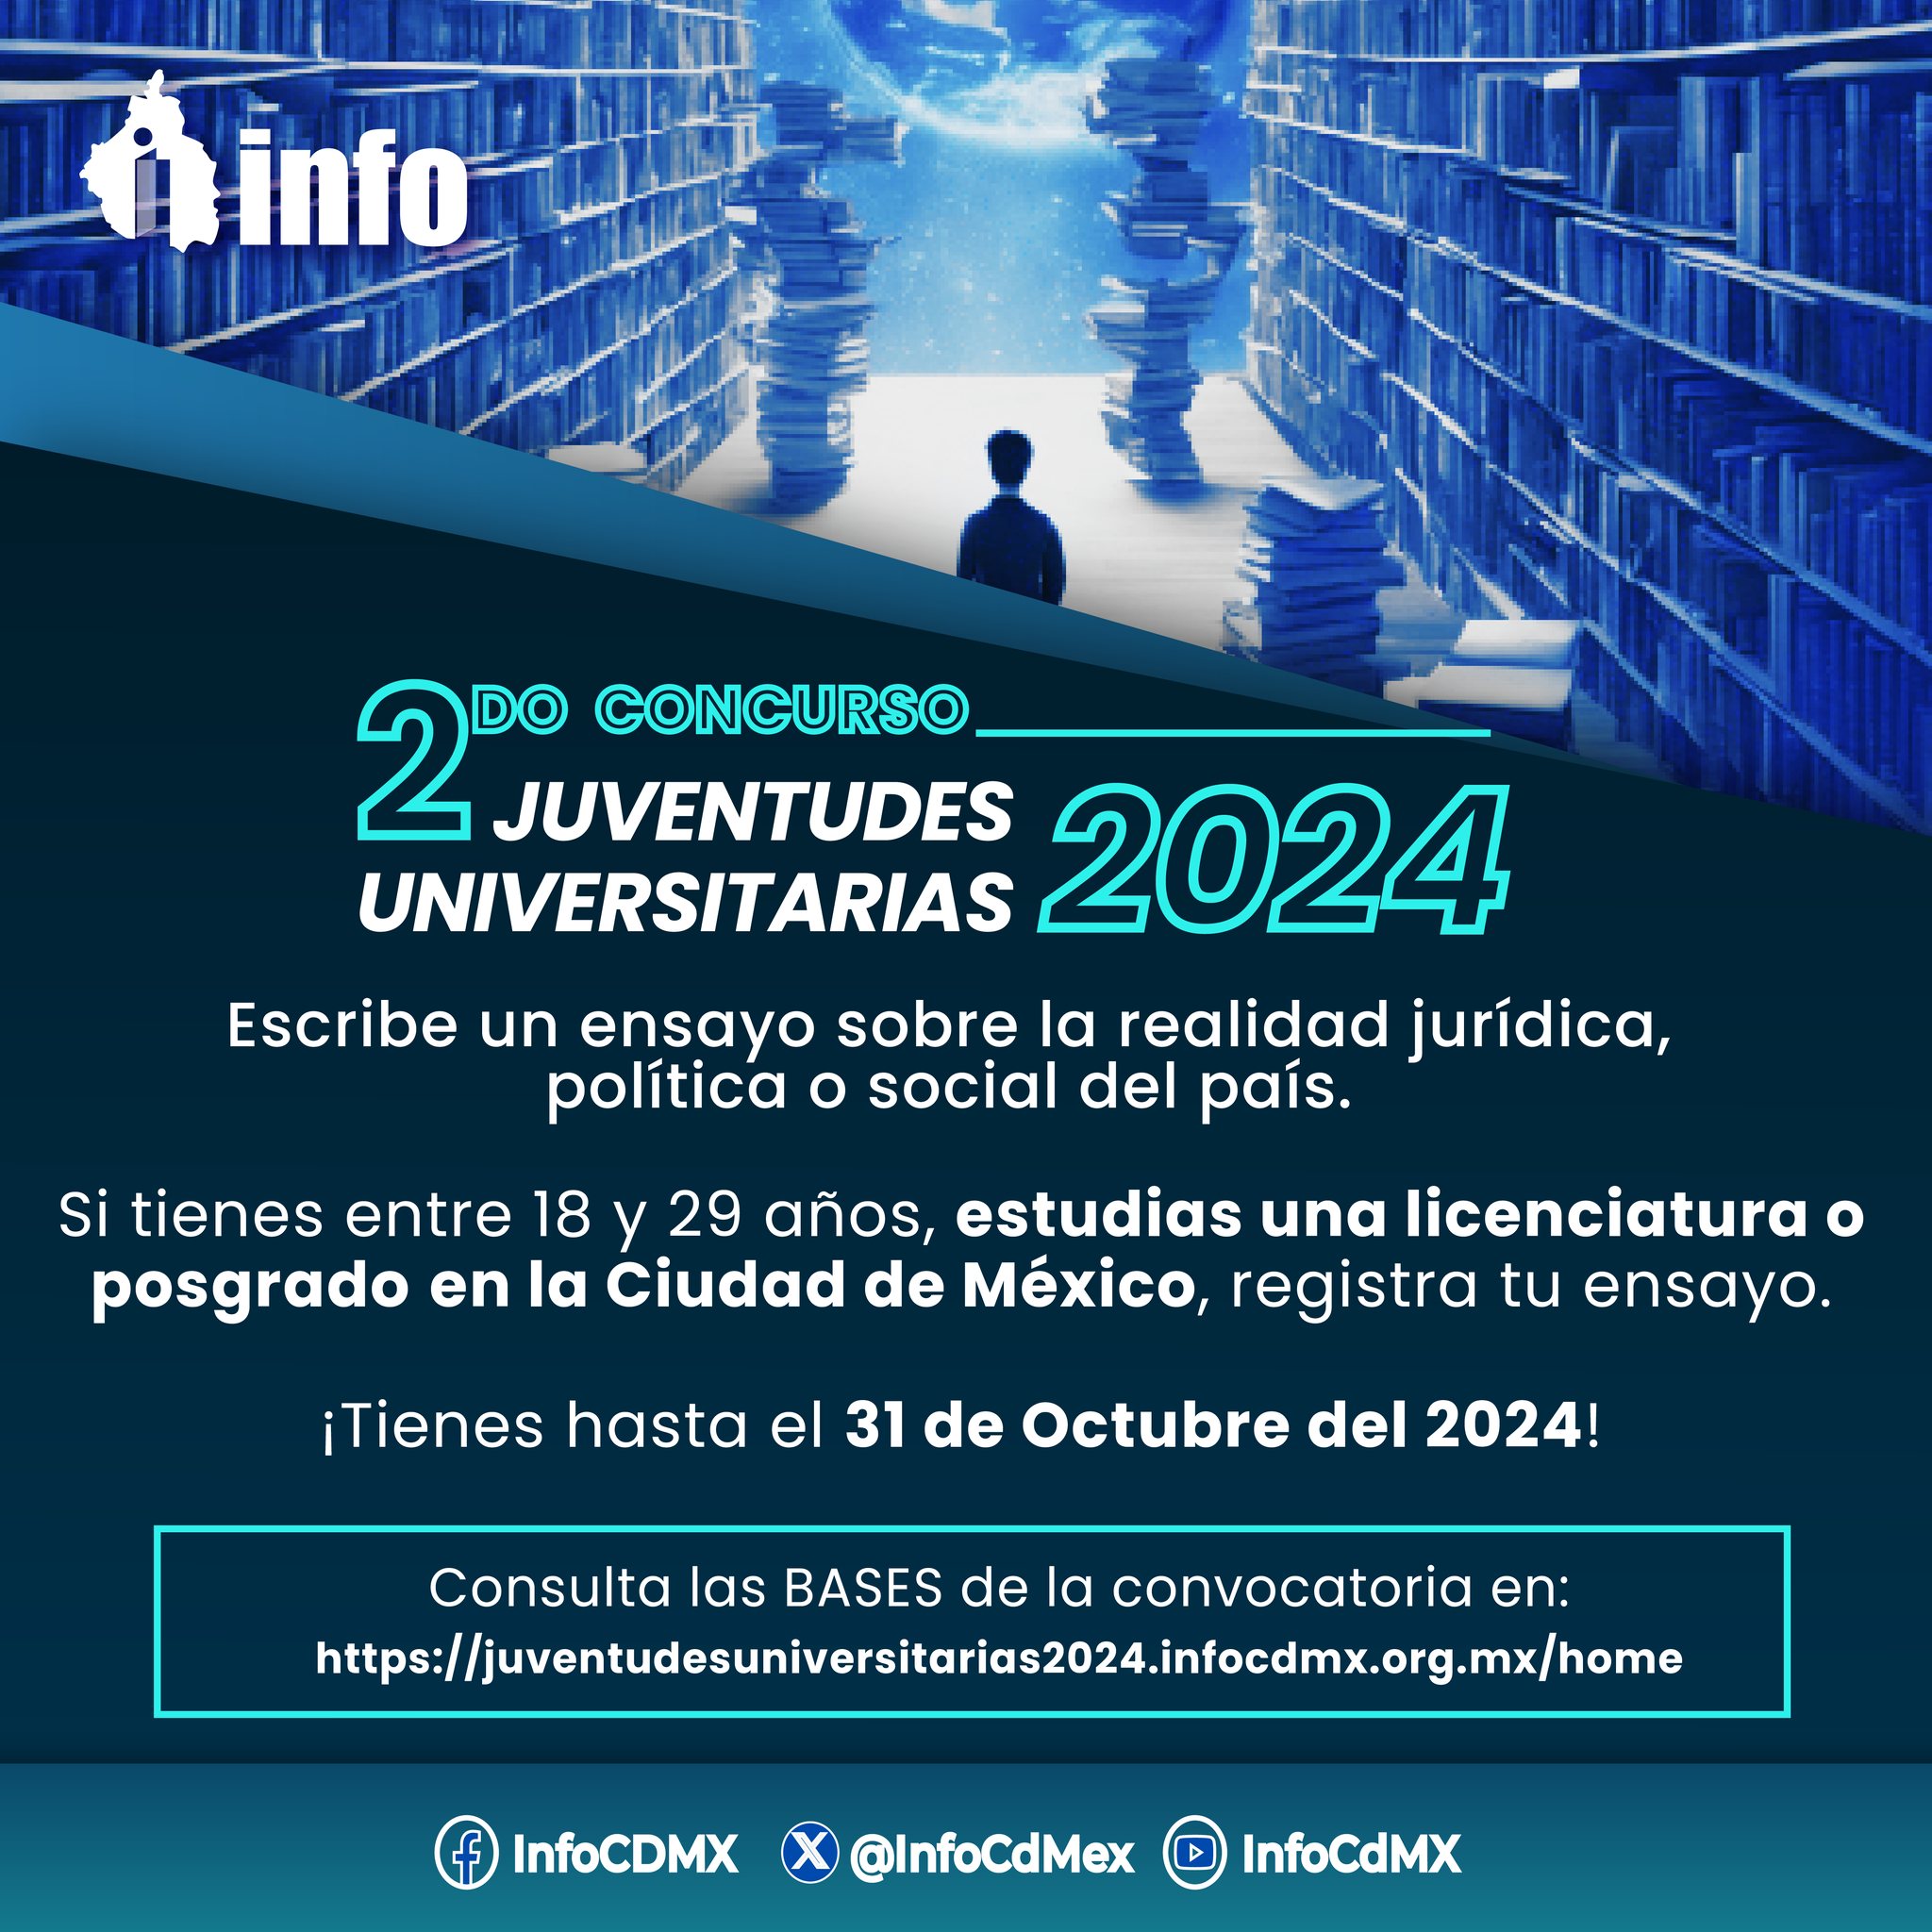 El Instituto de Transparencia, Acceso a la Información Pública, Protección de Datos Personales y Rendición de Cuentas de la Ciudad de México (INFO CDMX) convoca al Primer Concurso “Juventudes Universitarias 2023”.